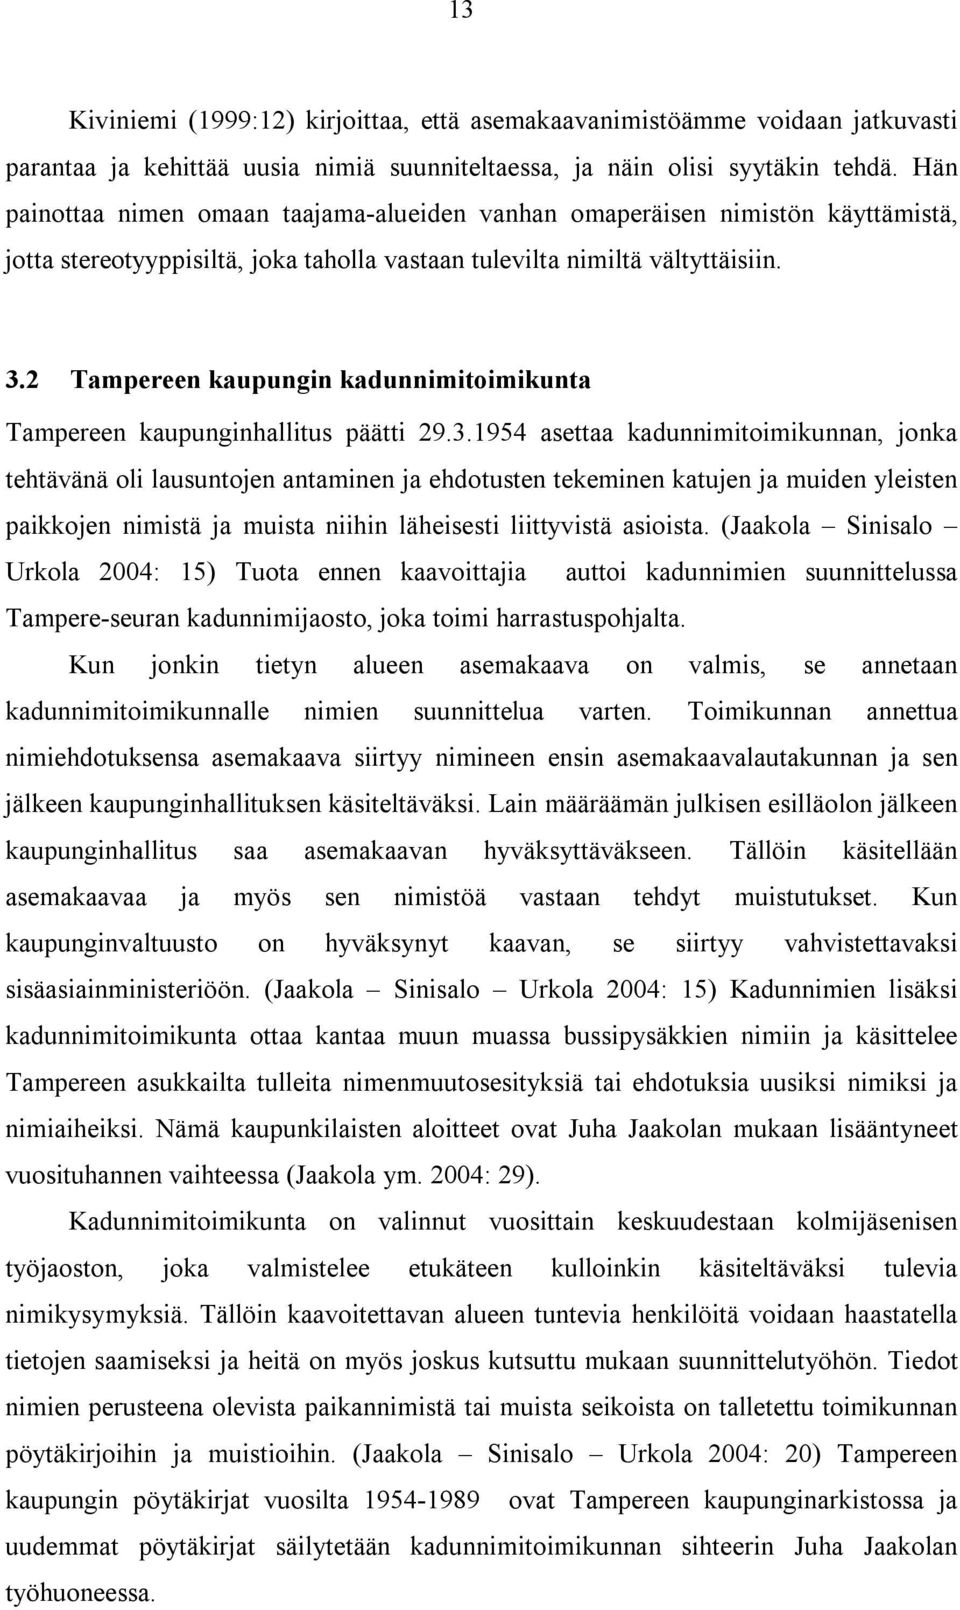 2 Tampereen kaupungin kadunnimitoimikunta Tampereen kaupunginhallitus päätti 29.3.